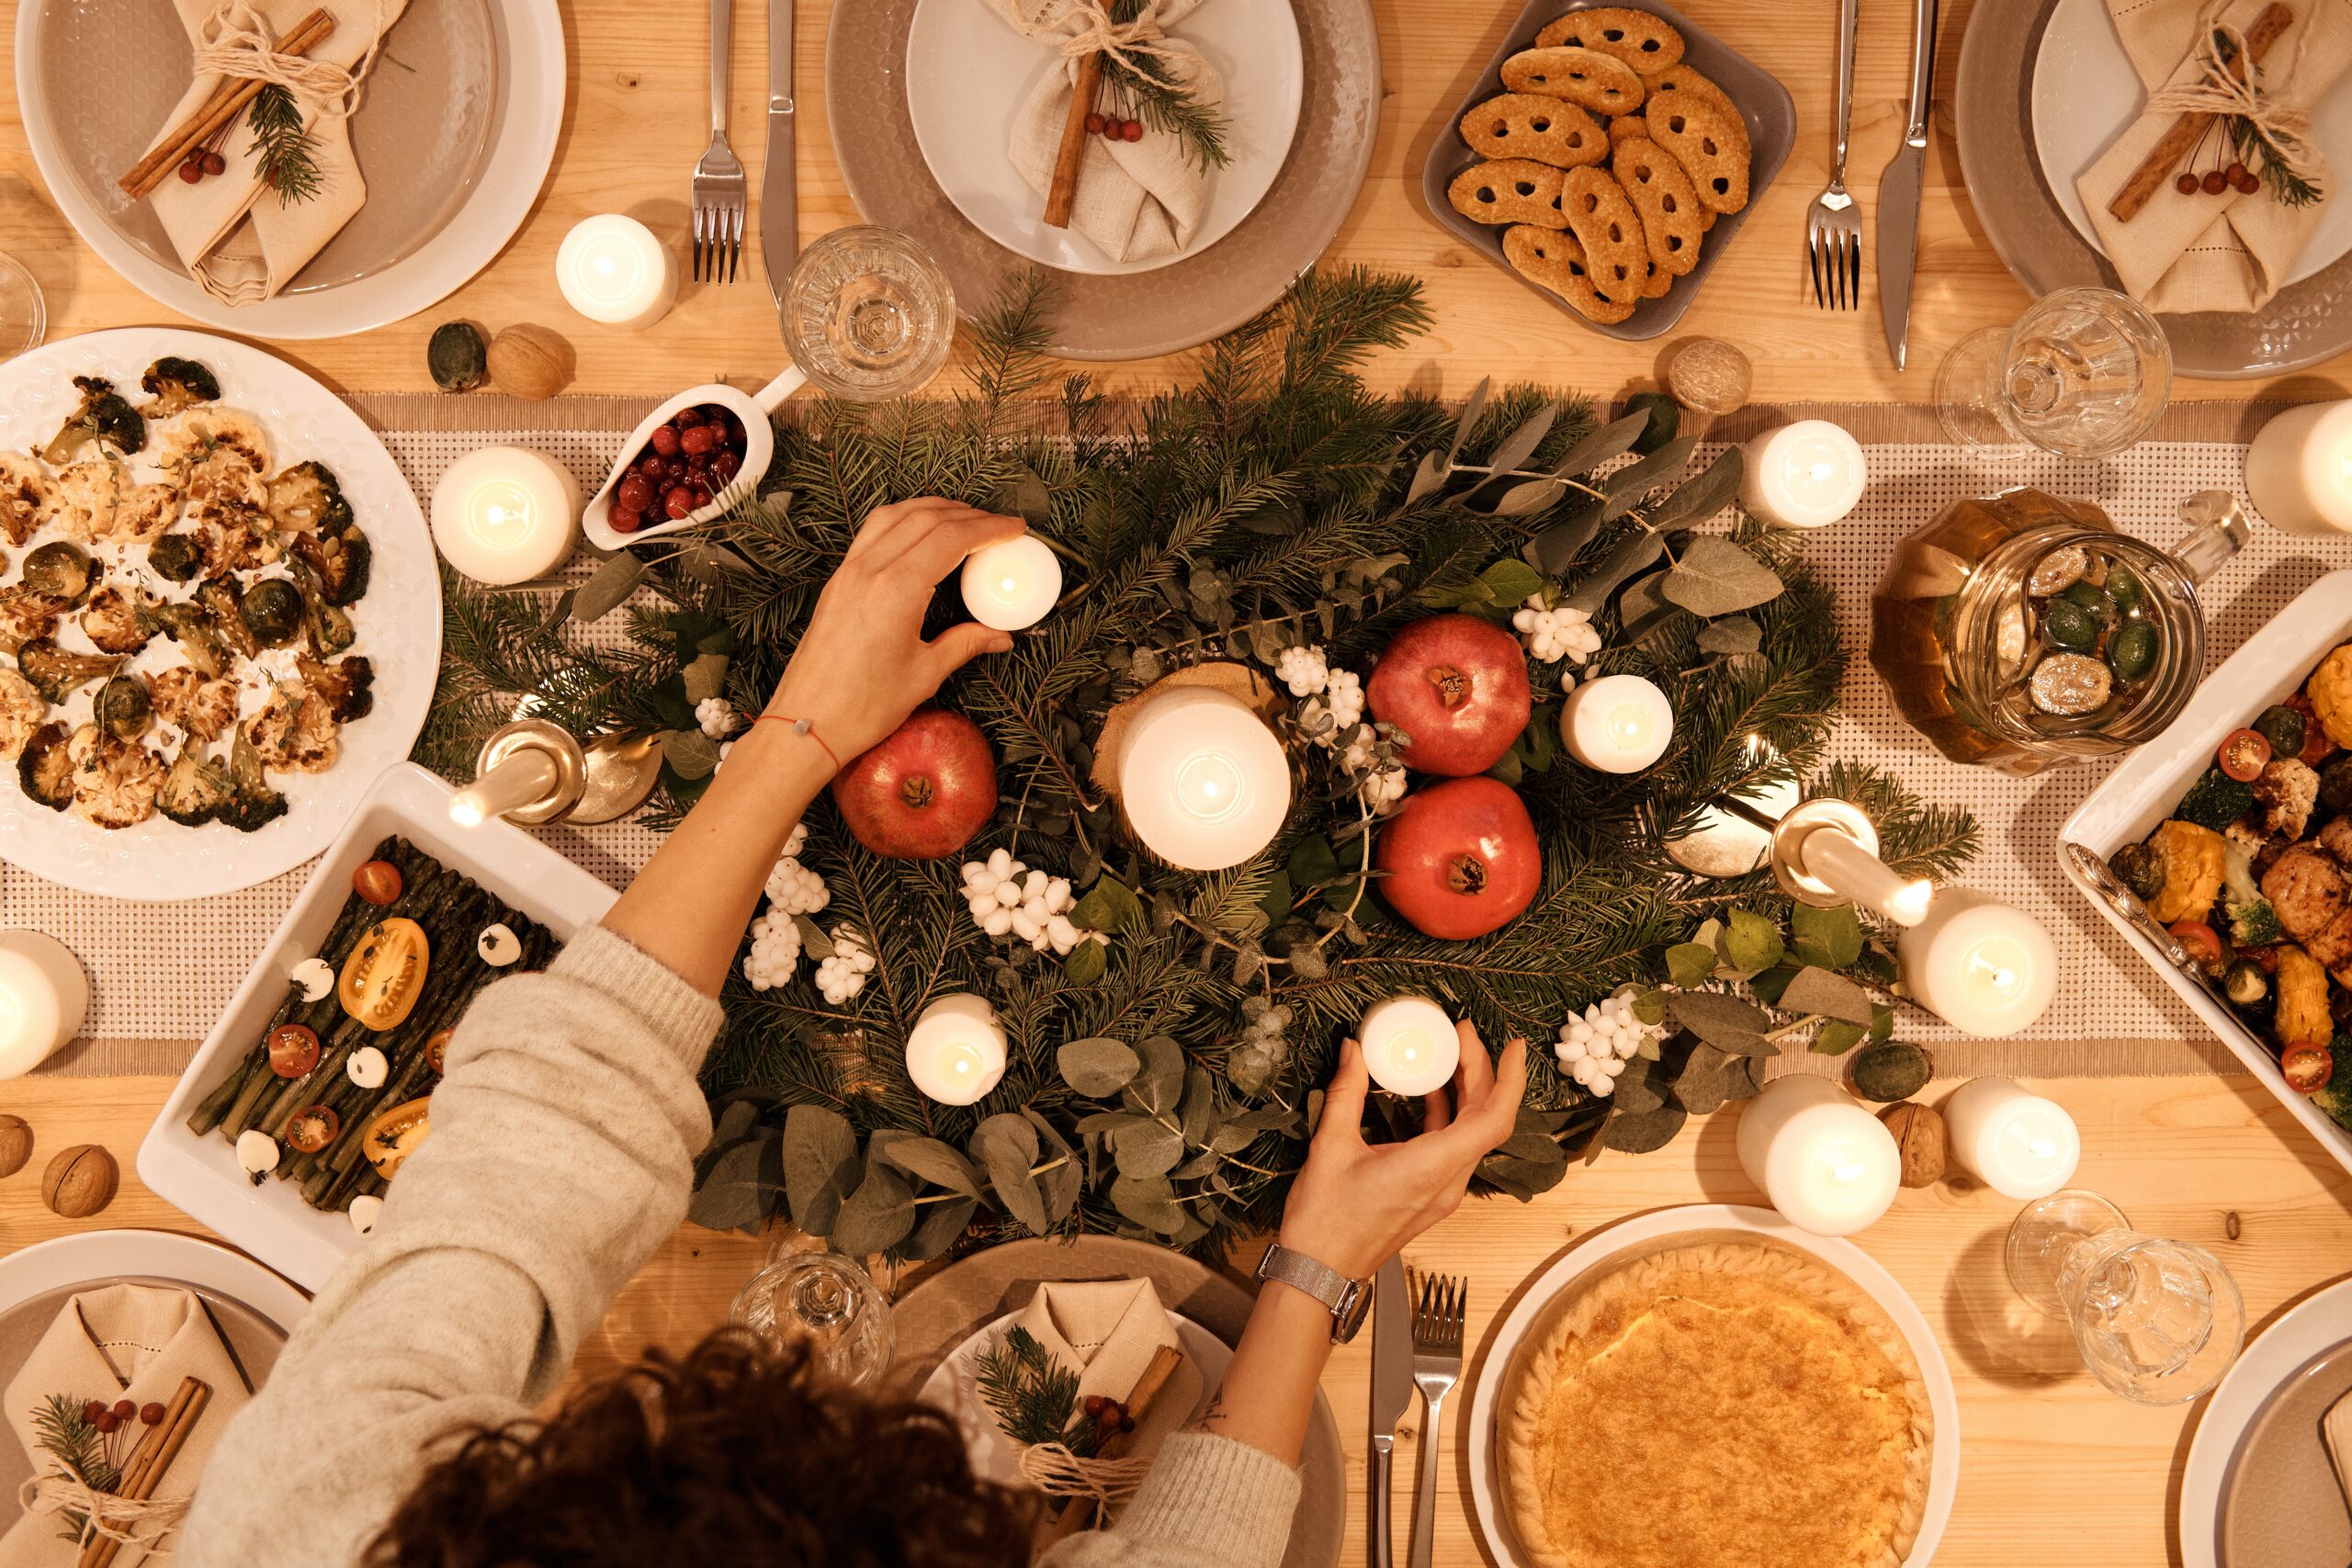  Δείτε τα φρούτα που δεν πρέπει να λείπουν από το χριστουγεννιάτικο δείπνο σας!